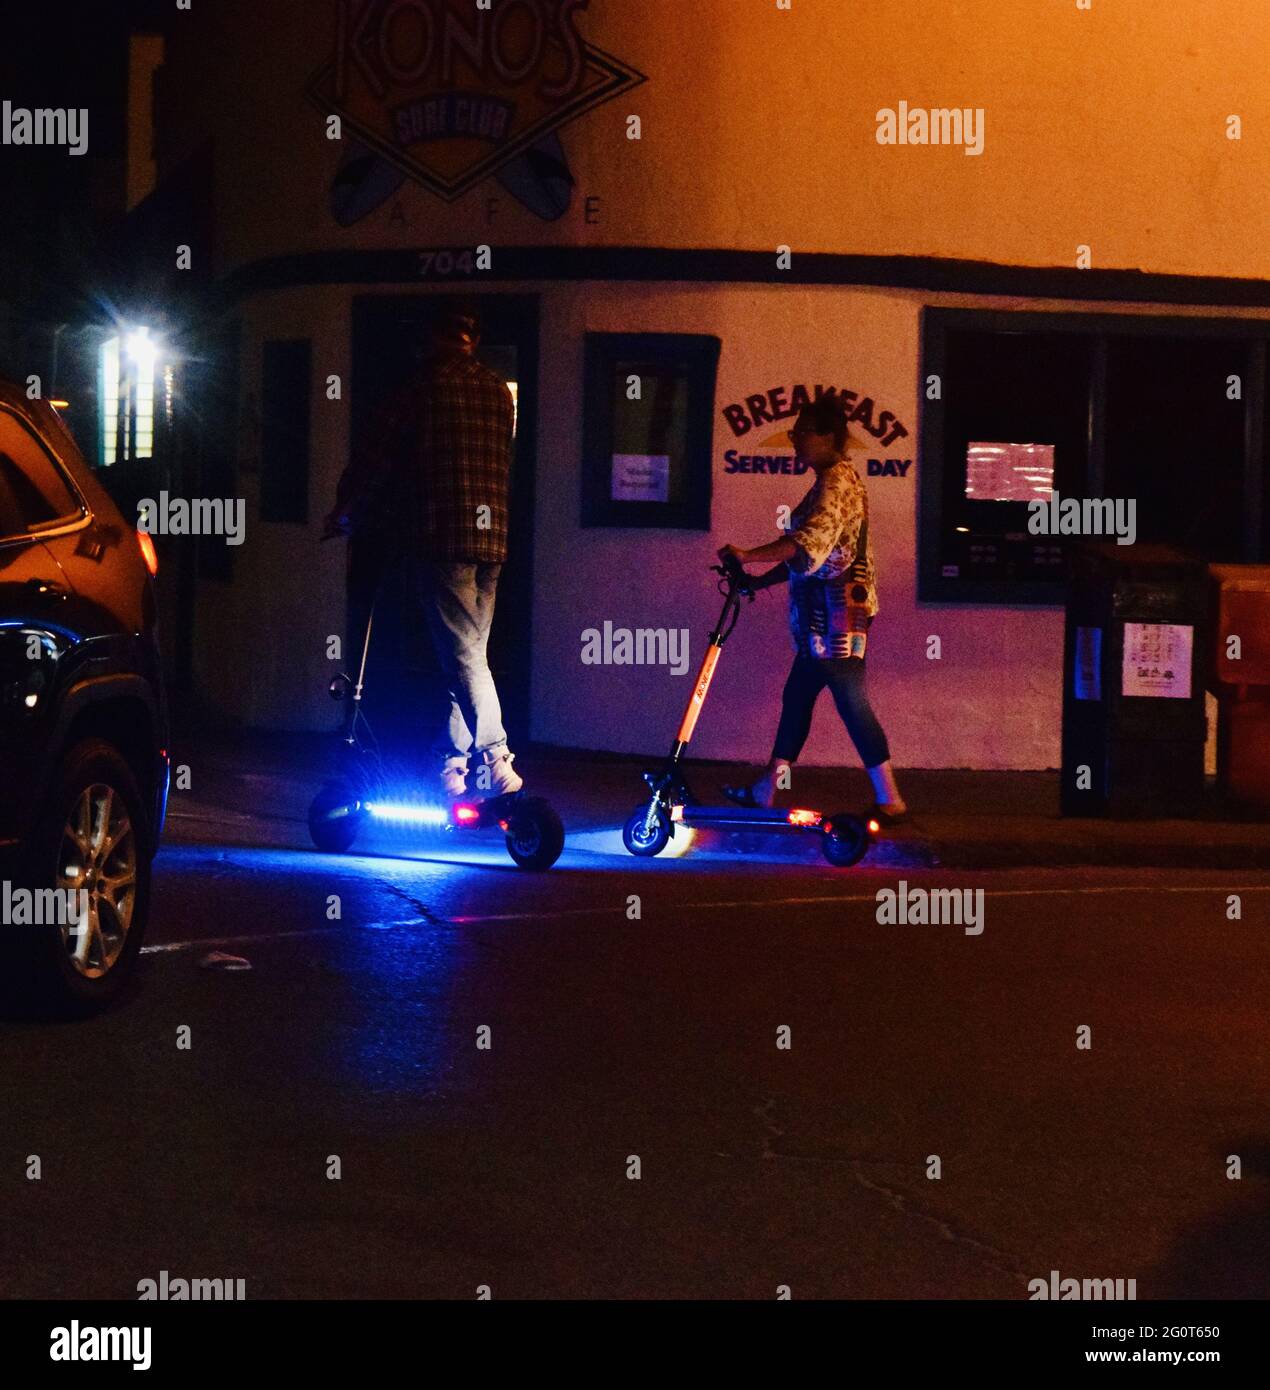 SAN DIEGO, CA., USA - 25. Mai 2021: Ein Foto von zwei Personen, die nachts in San Diego auf einem beleuchteten Neon-Roller fahren - 2021. Mai Stockfoto